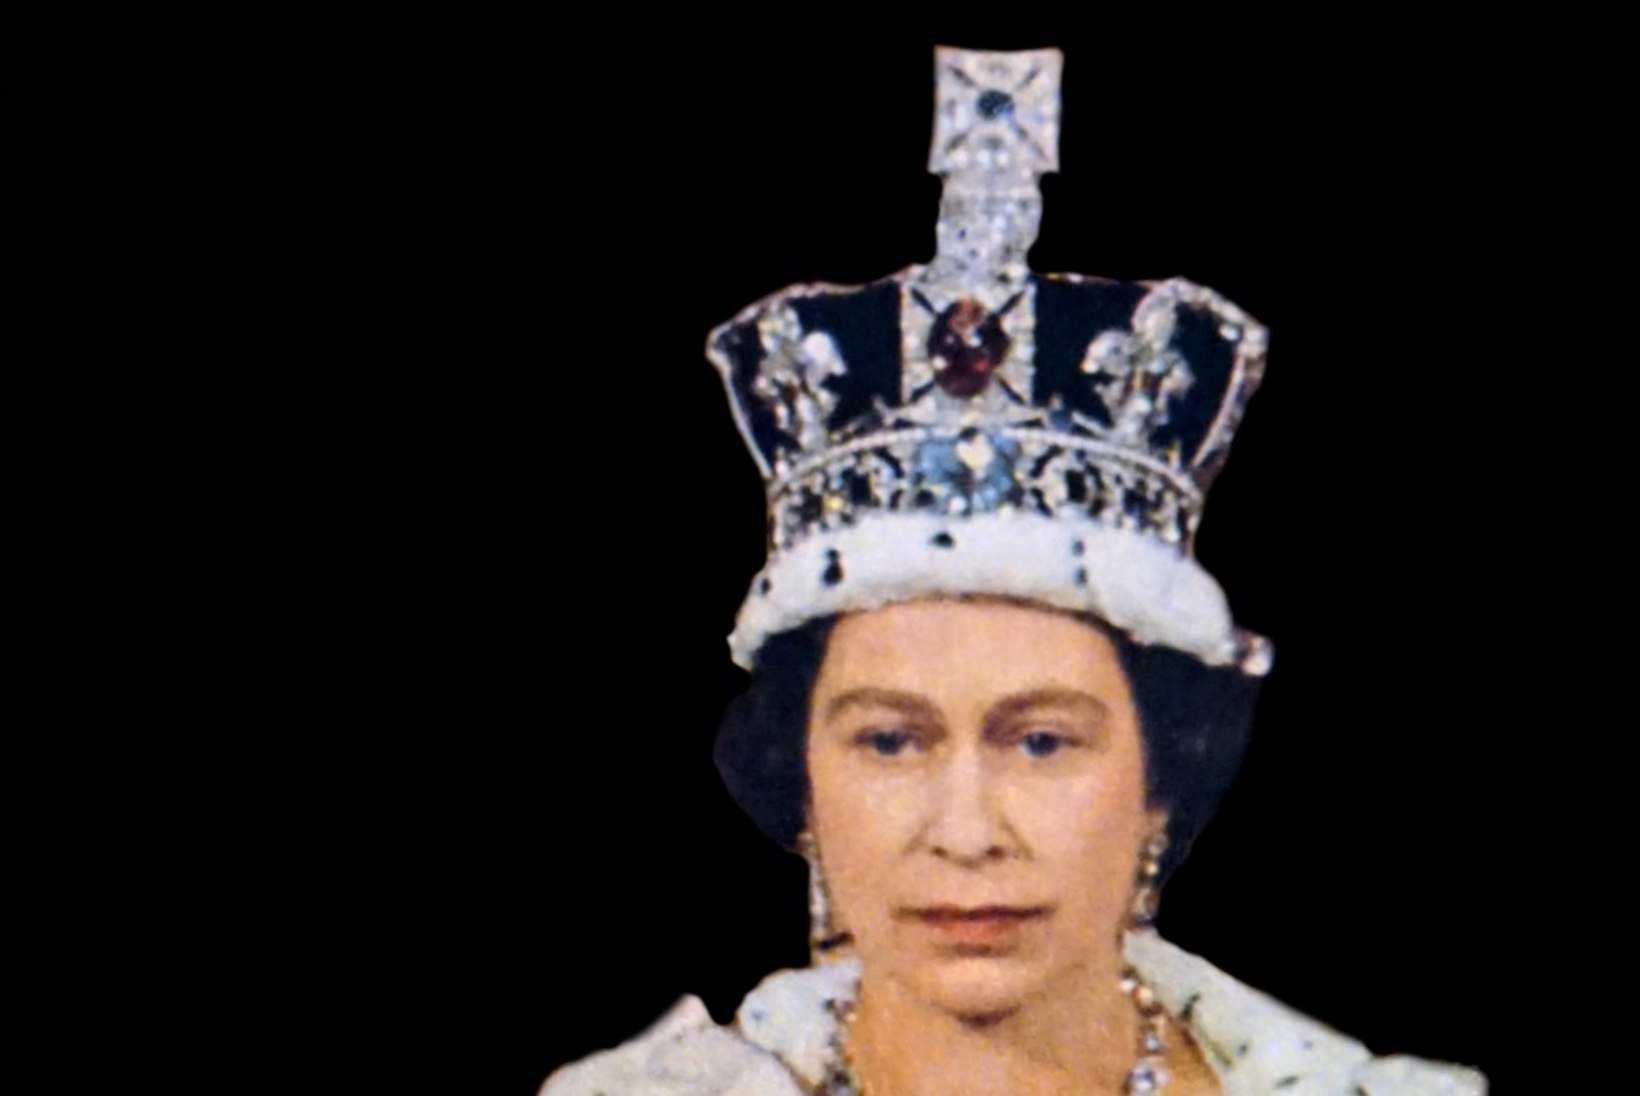 PALJU ÕNNE! Elizabeth II-l täitub täna 65 aastat Briti kuningannana